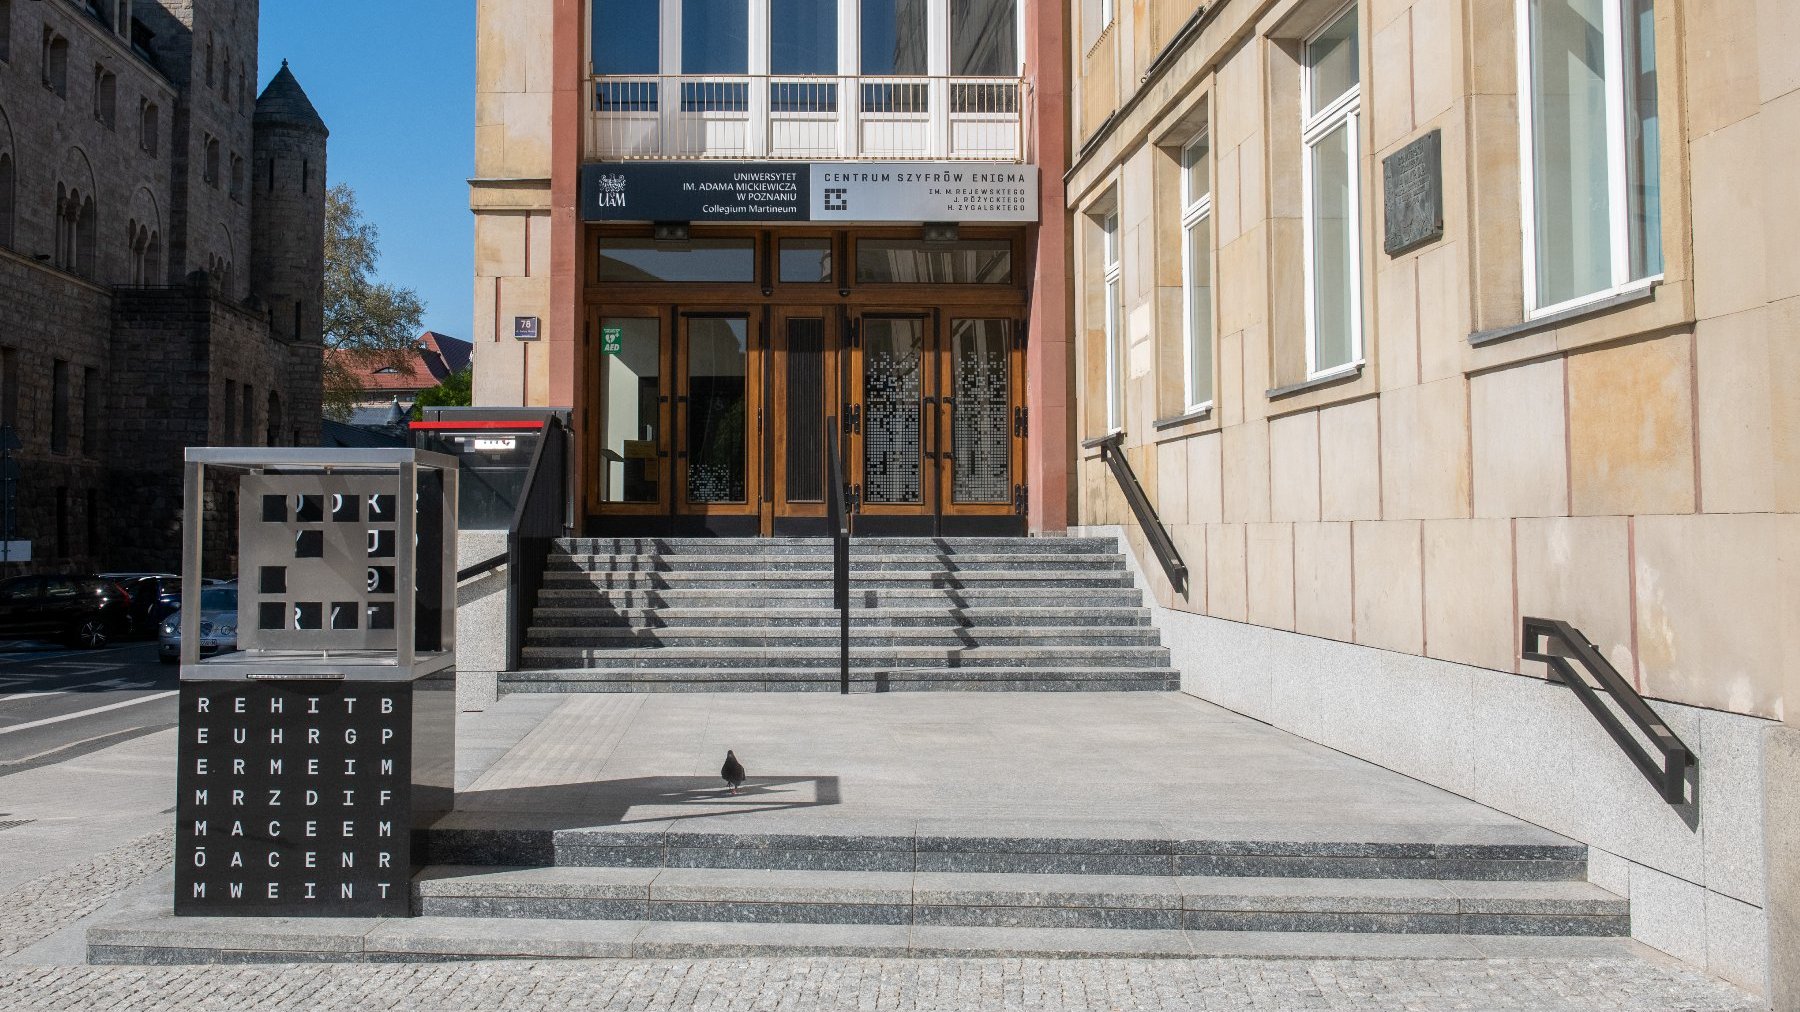 Galeria zdjęć przedstawia schody prowadzące do wejścia do Centrum Szyfrów Enigma.